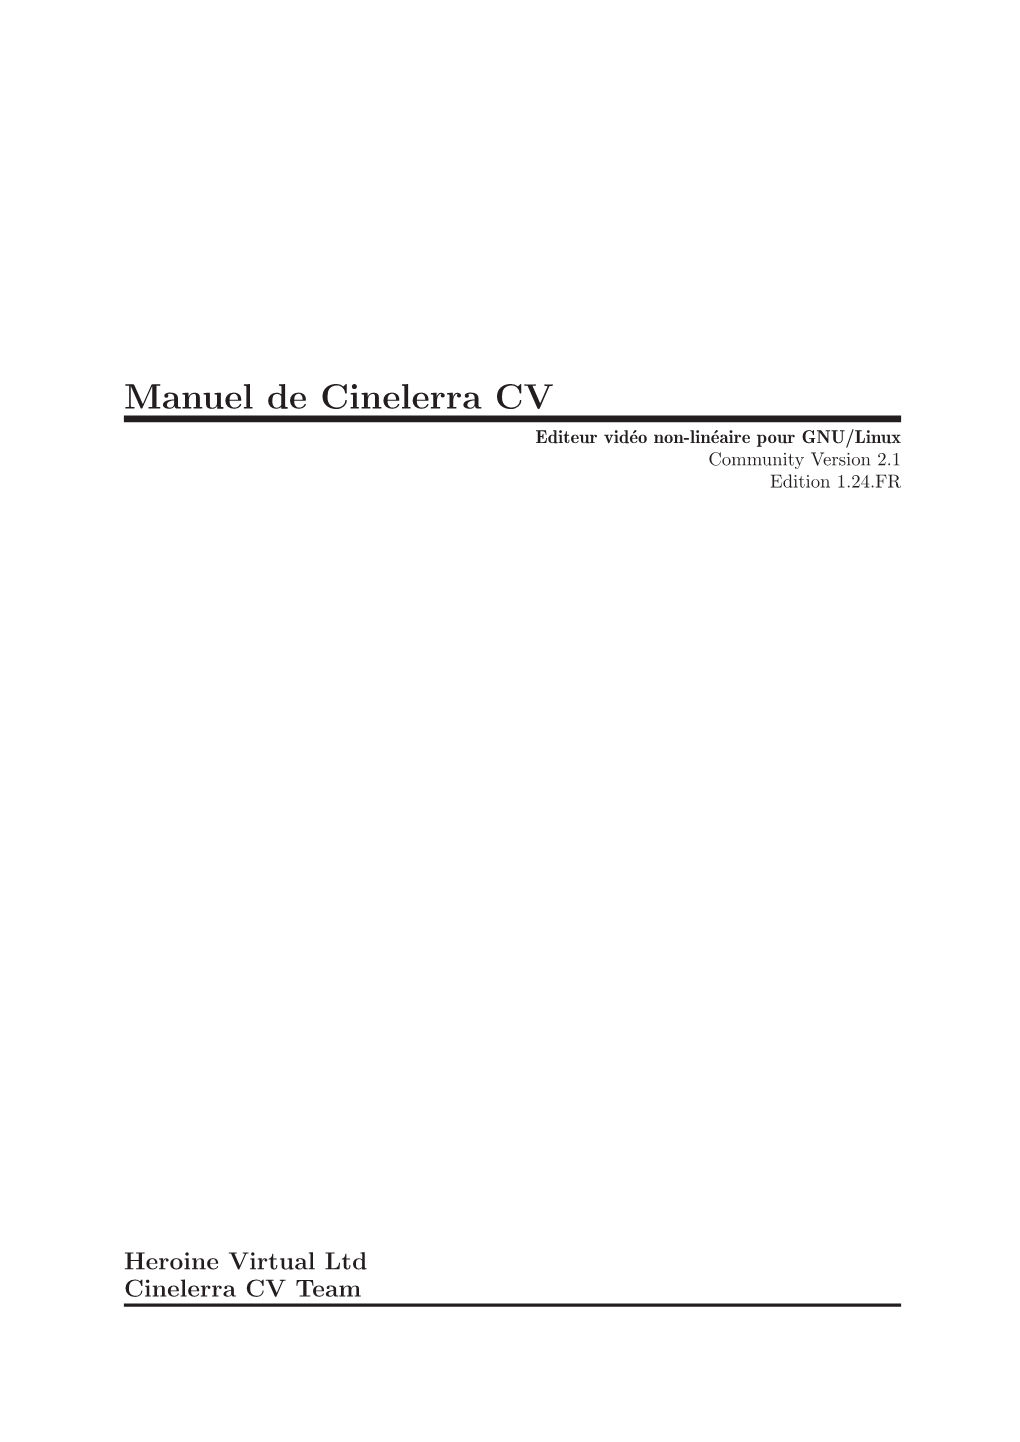 Manuel De Cinelerra CV Editeur Vid´Eo Non-Lin´Eairepour GNU/Linux Community Version 2.1 Edition 1.24.FR